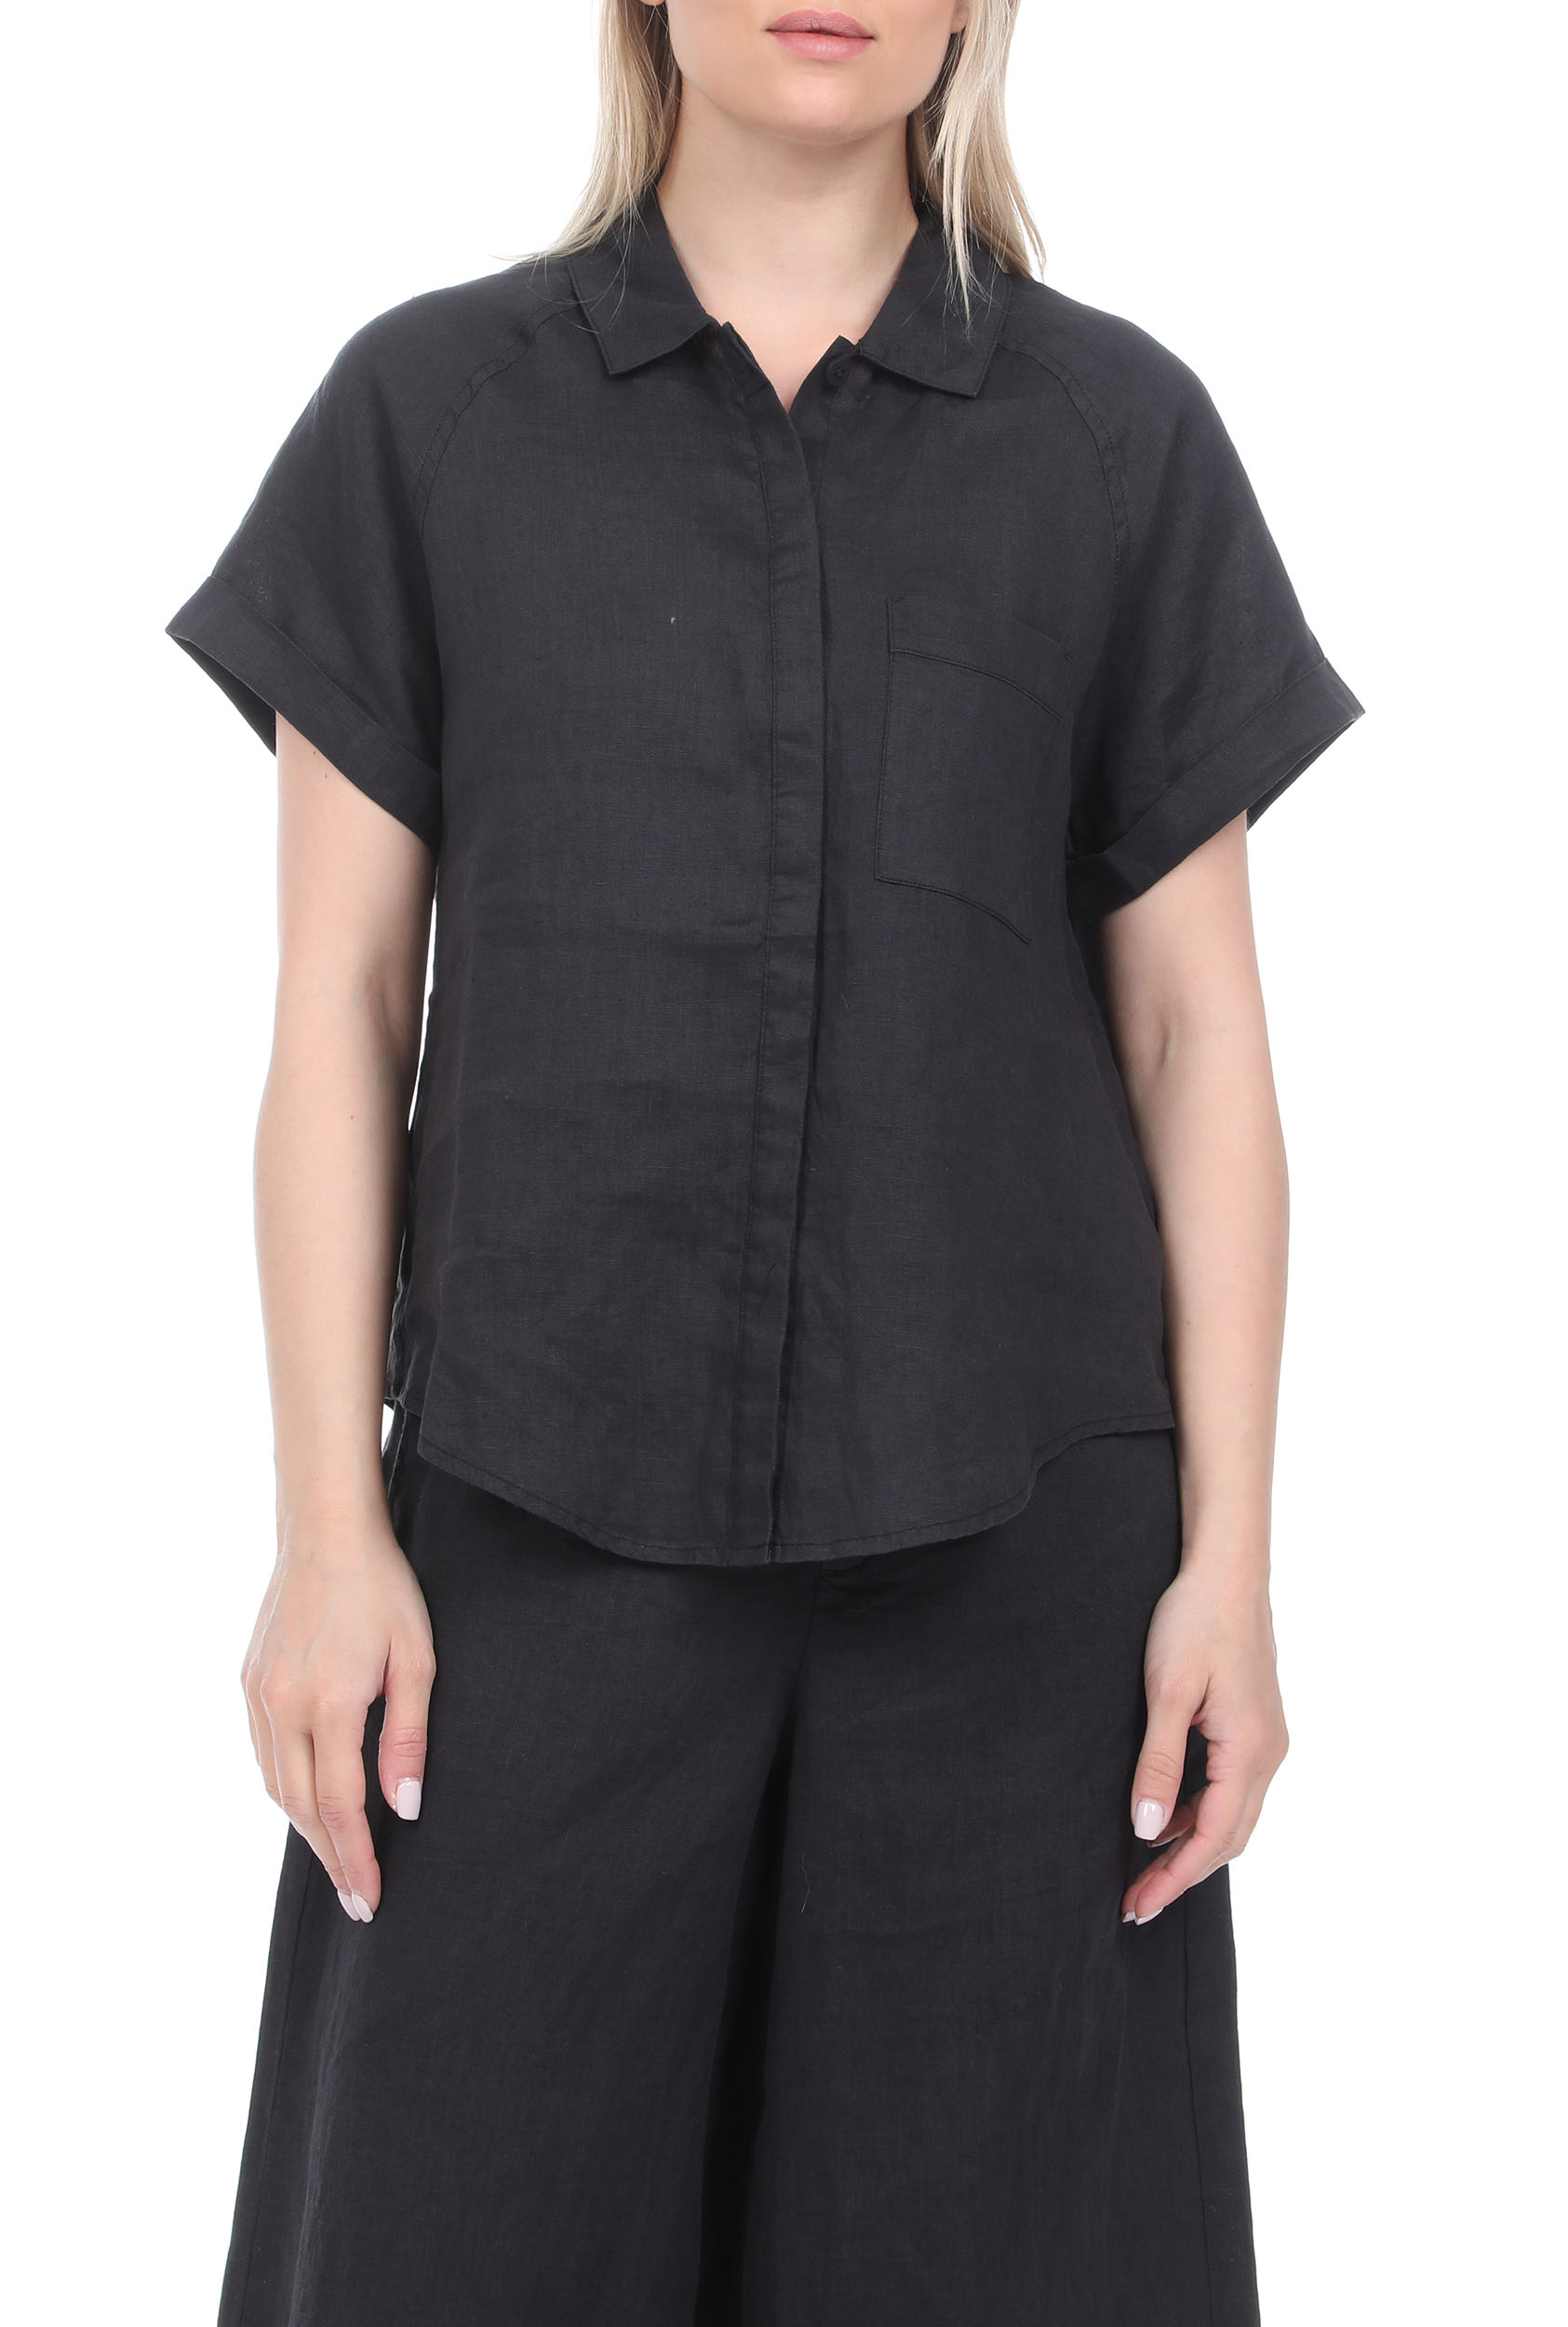 ECOALF – Γυναικείο λινό πουκάμισο ECOALF LYCHEE γκρι 1811420.0-00G4